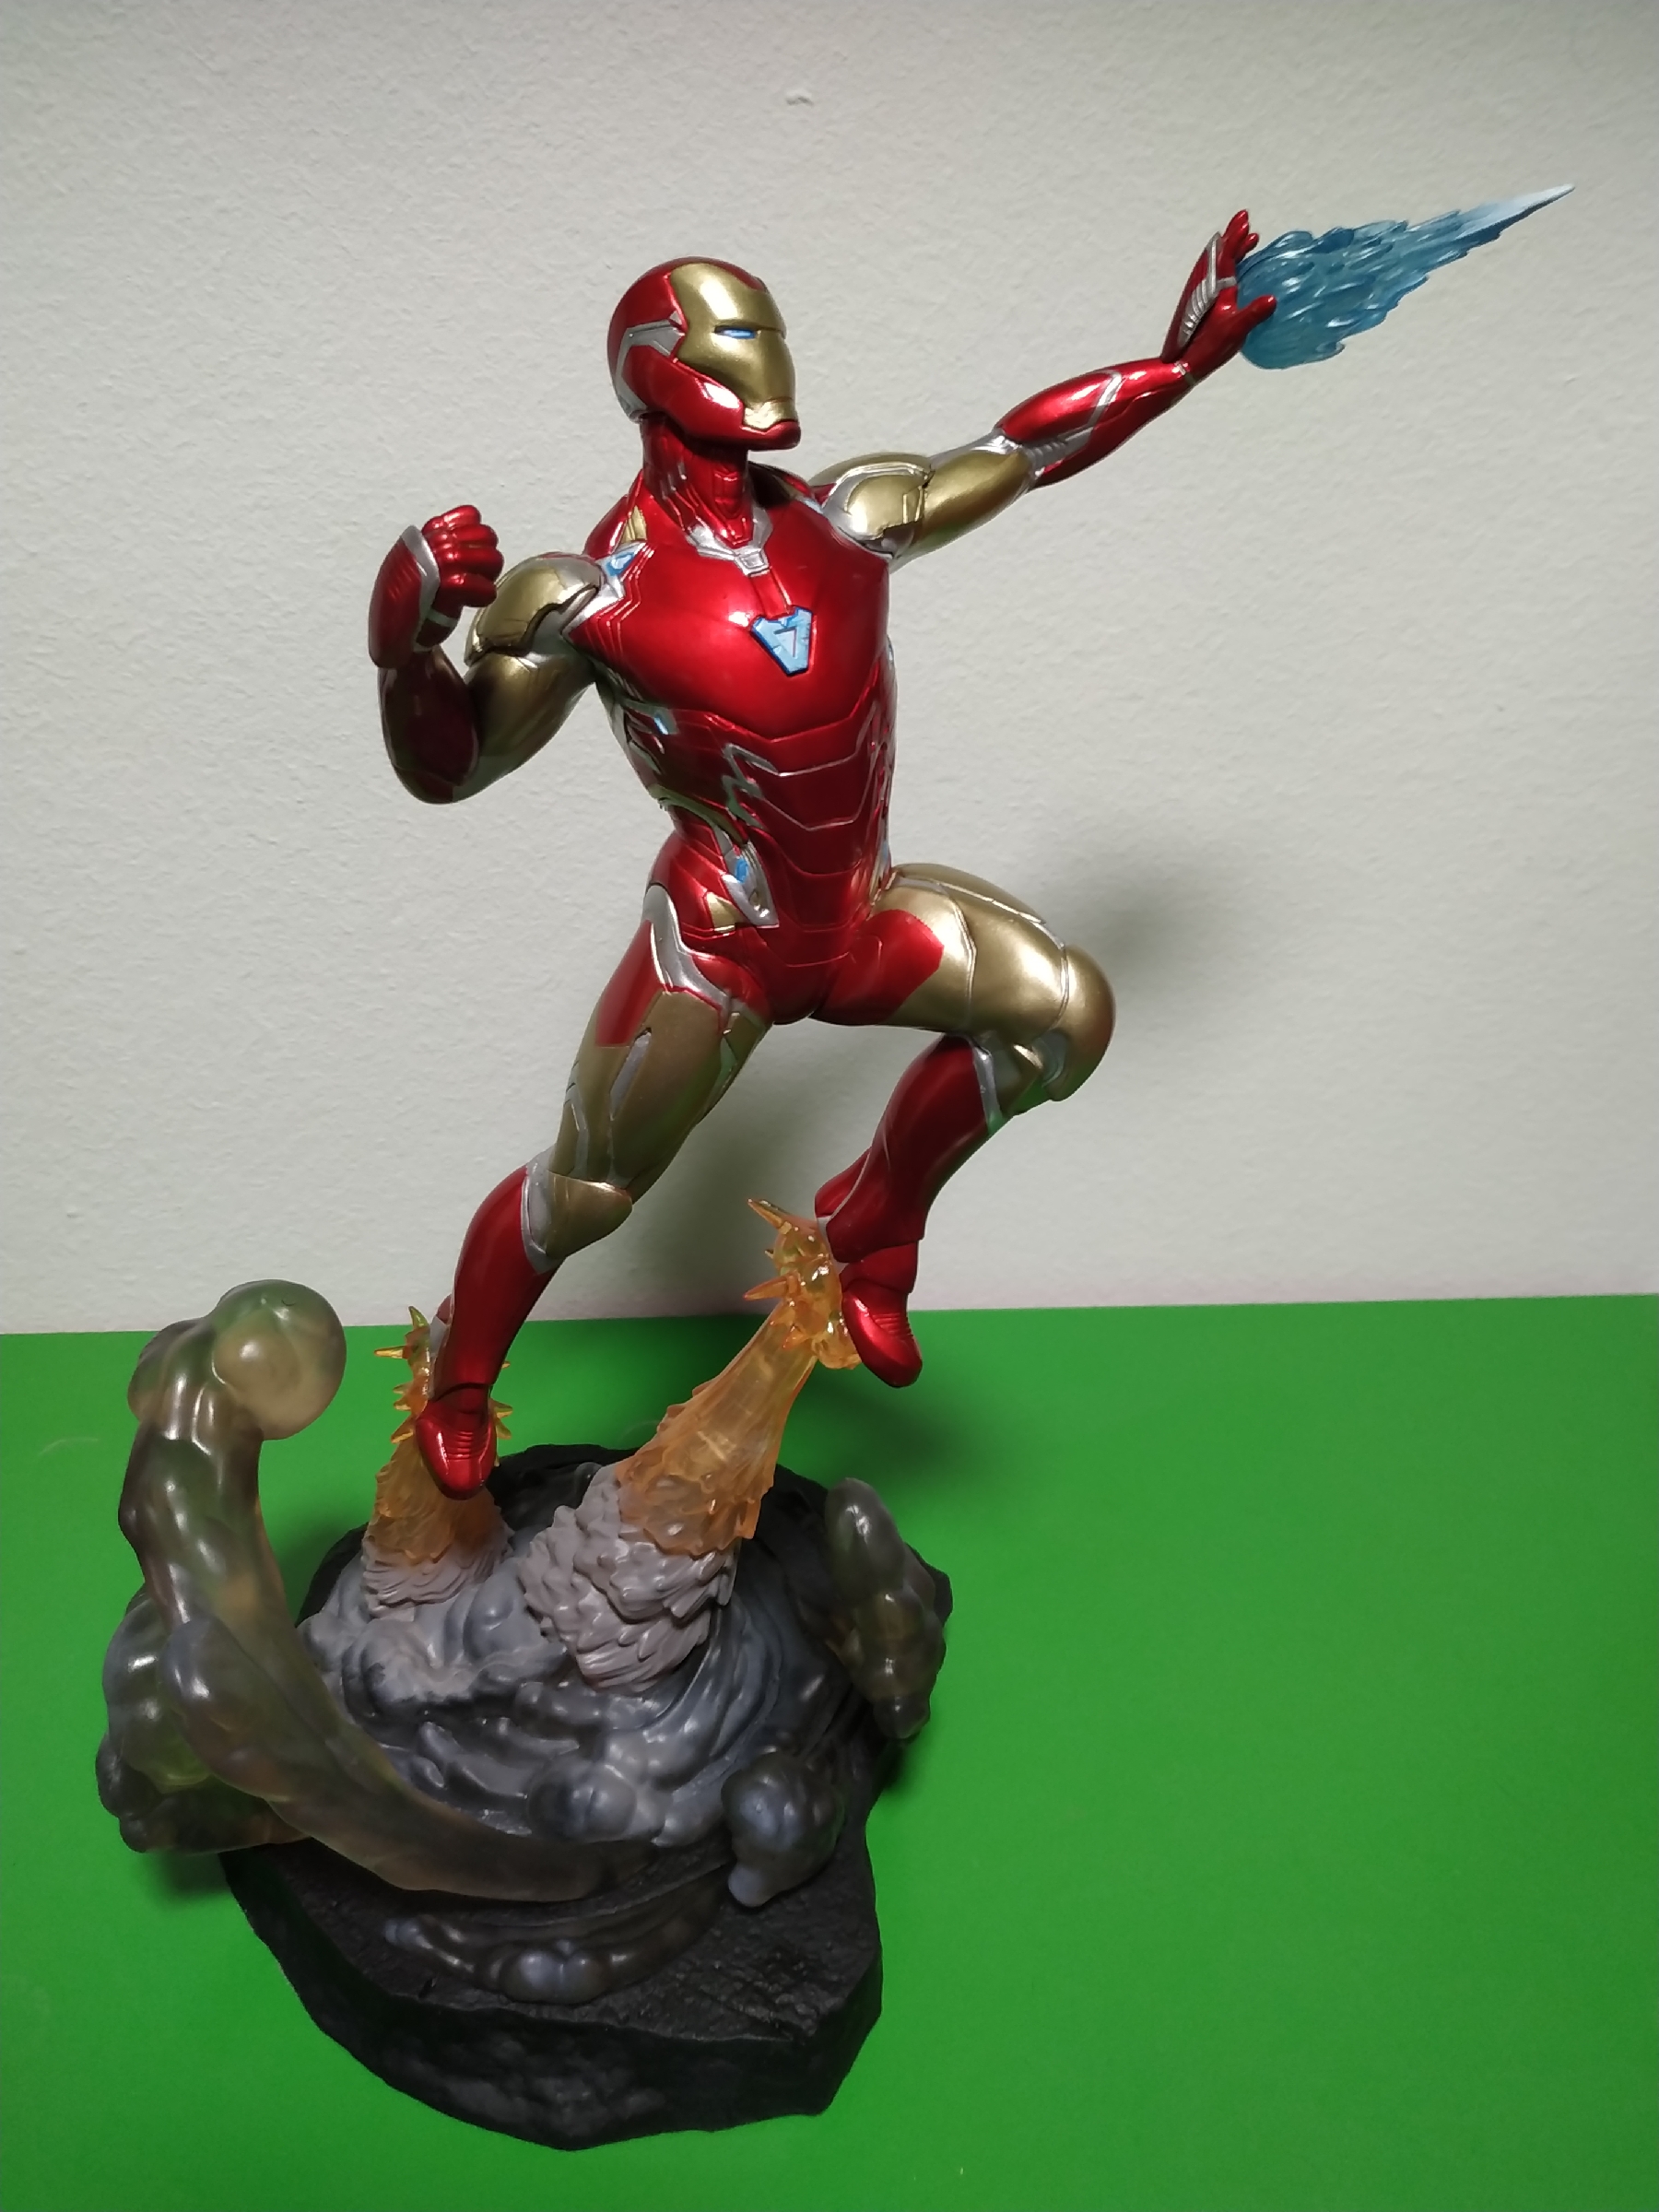 Condimento FALSO Colonial Mí nueva figura de Iron Man de Gallery